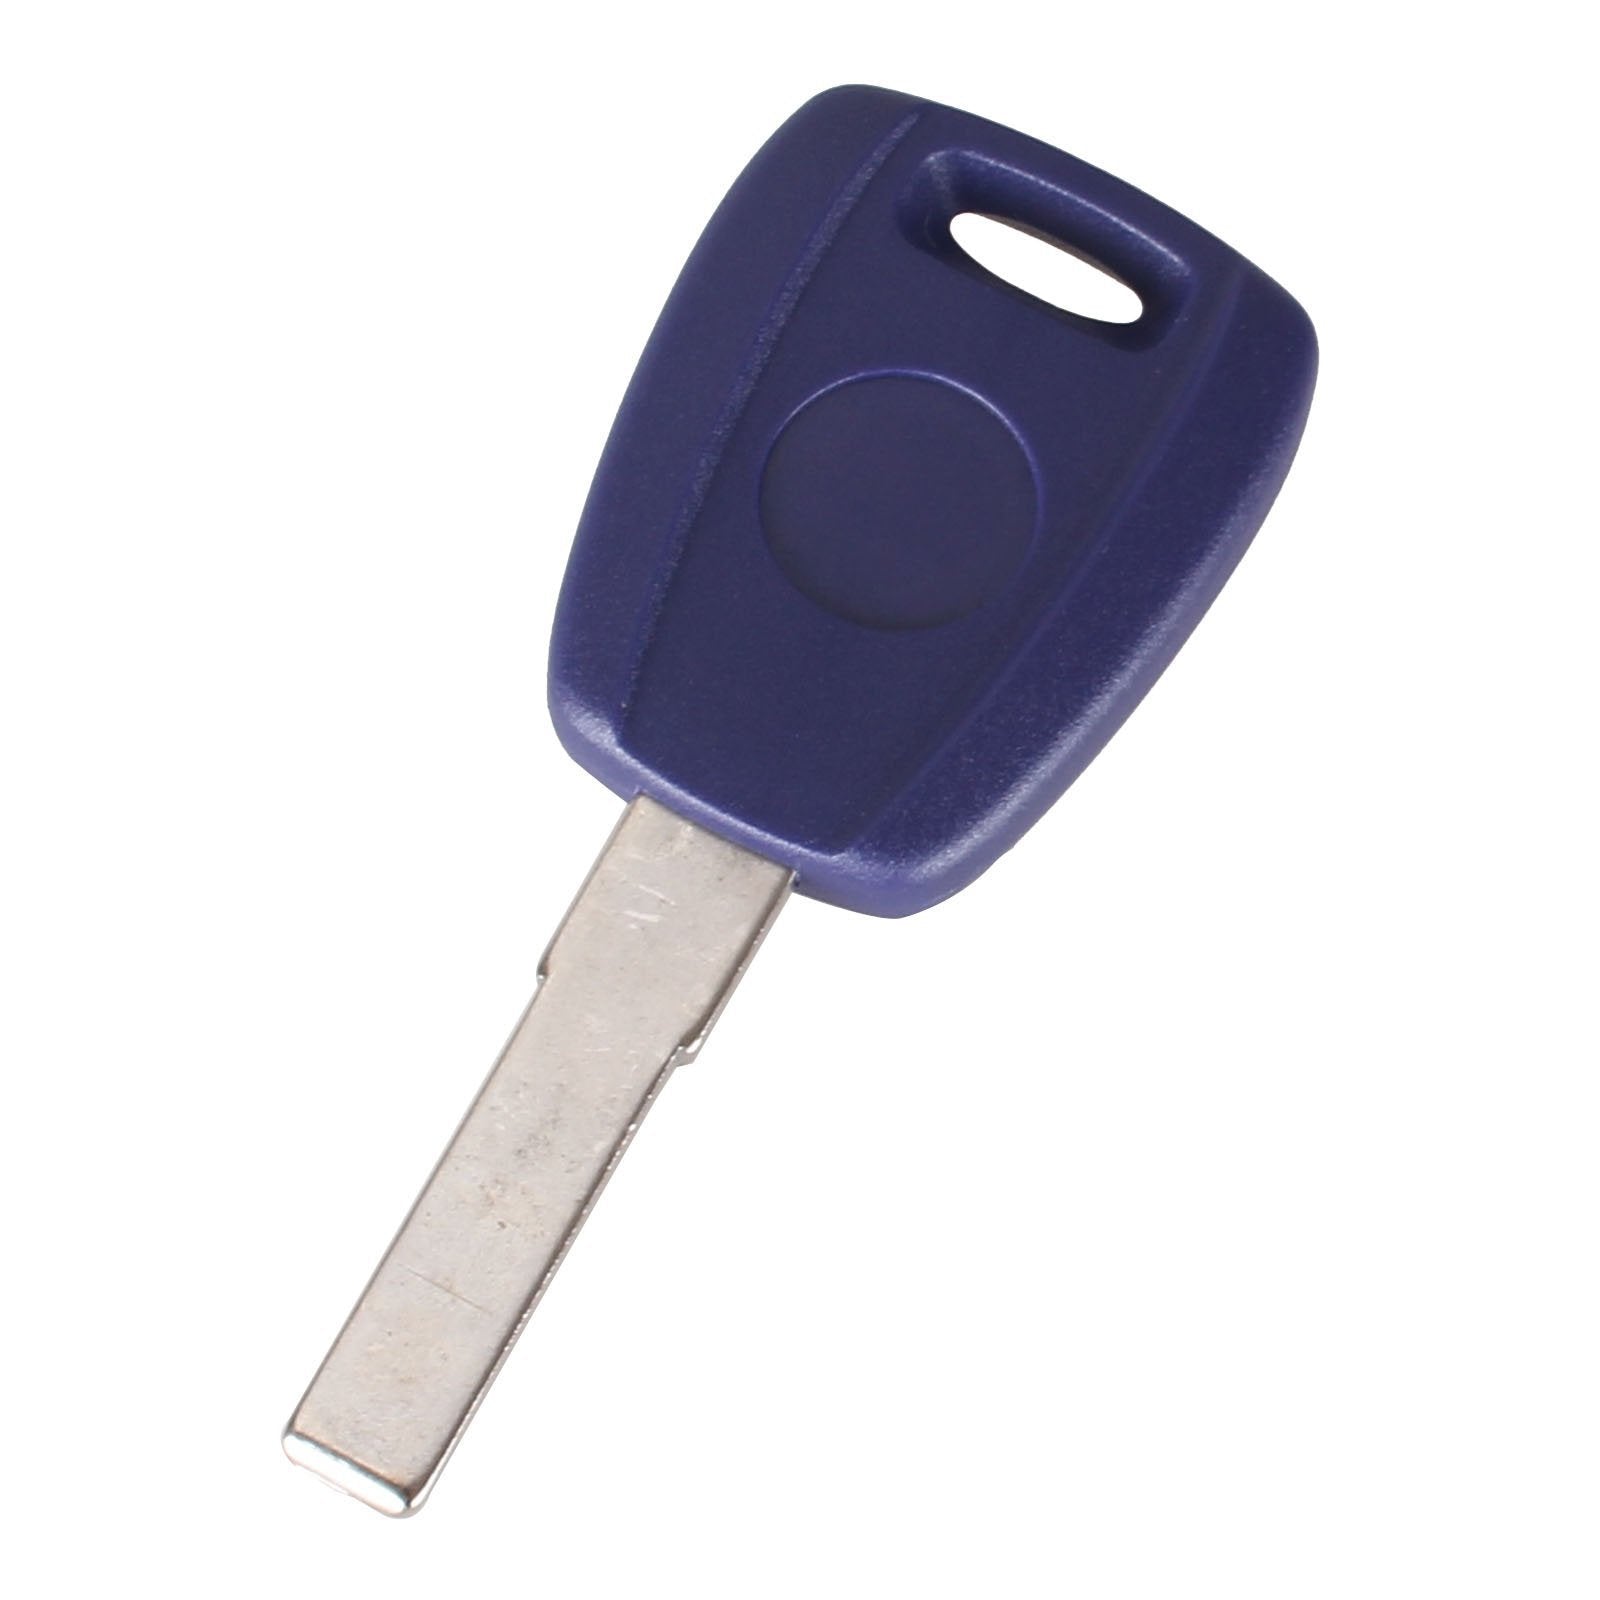 Kék színű Fiat kulcs, kulcsház SIP22 kulcsszárral.